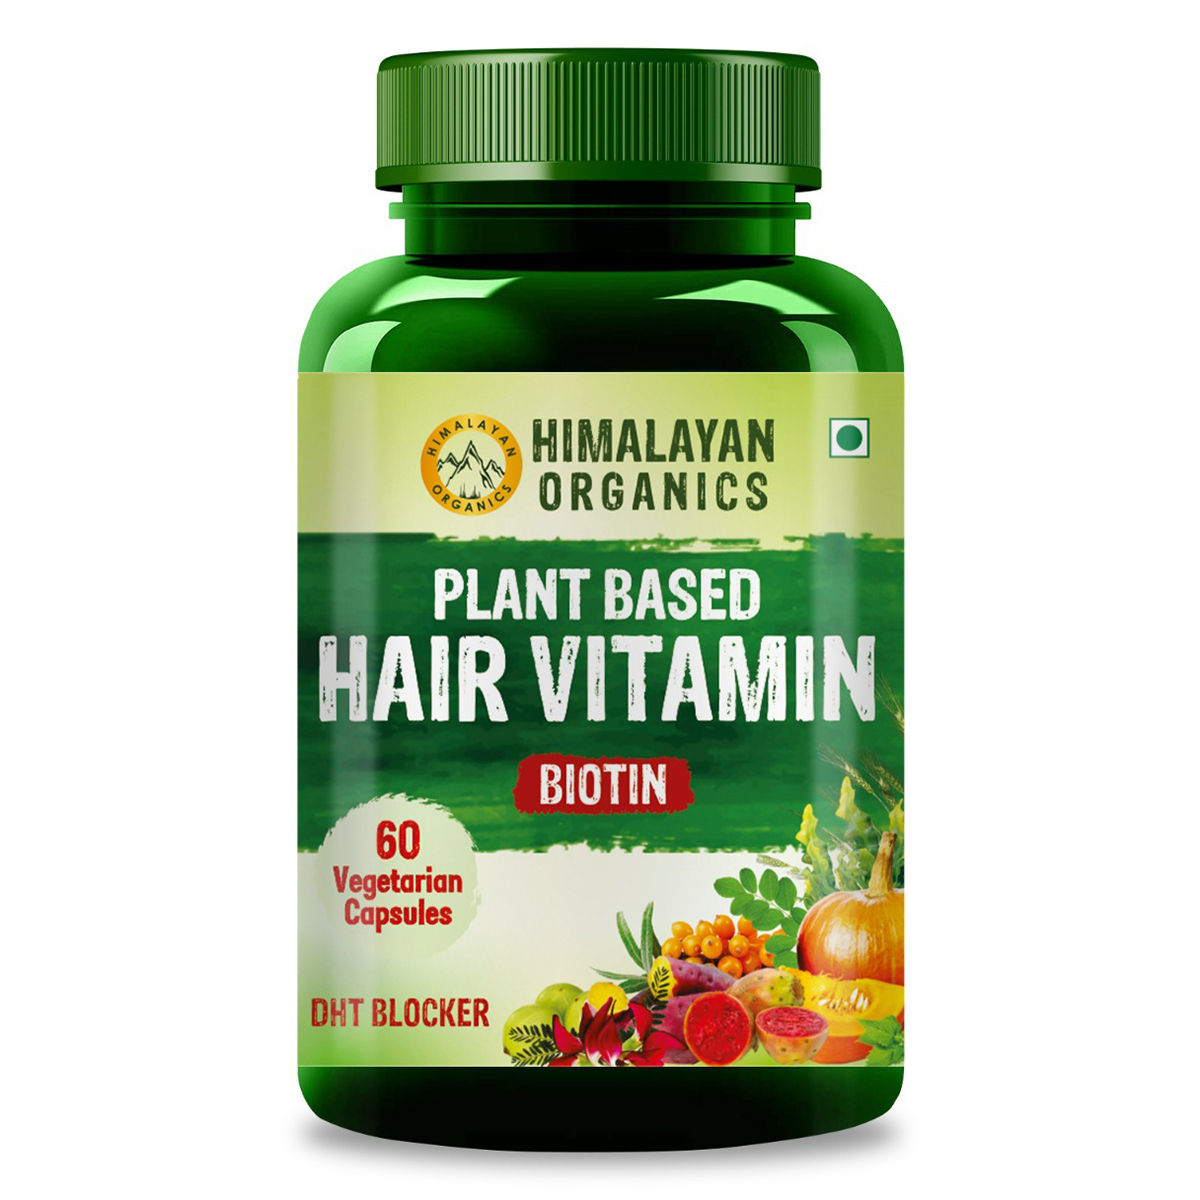 Buy Himalayan Organics Plant Based Hair Vitamin Biotin, 60 Capsules Online